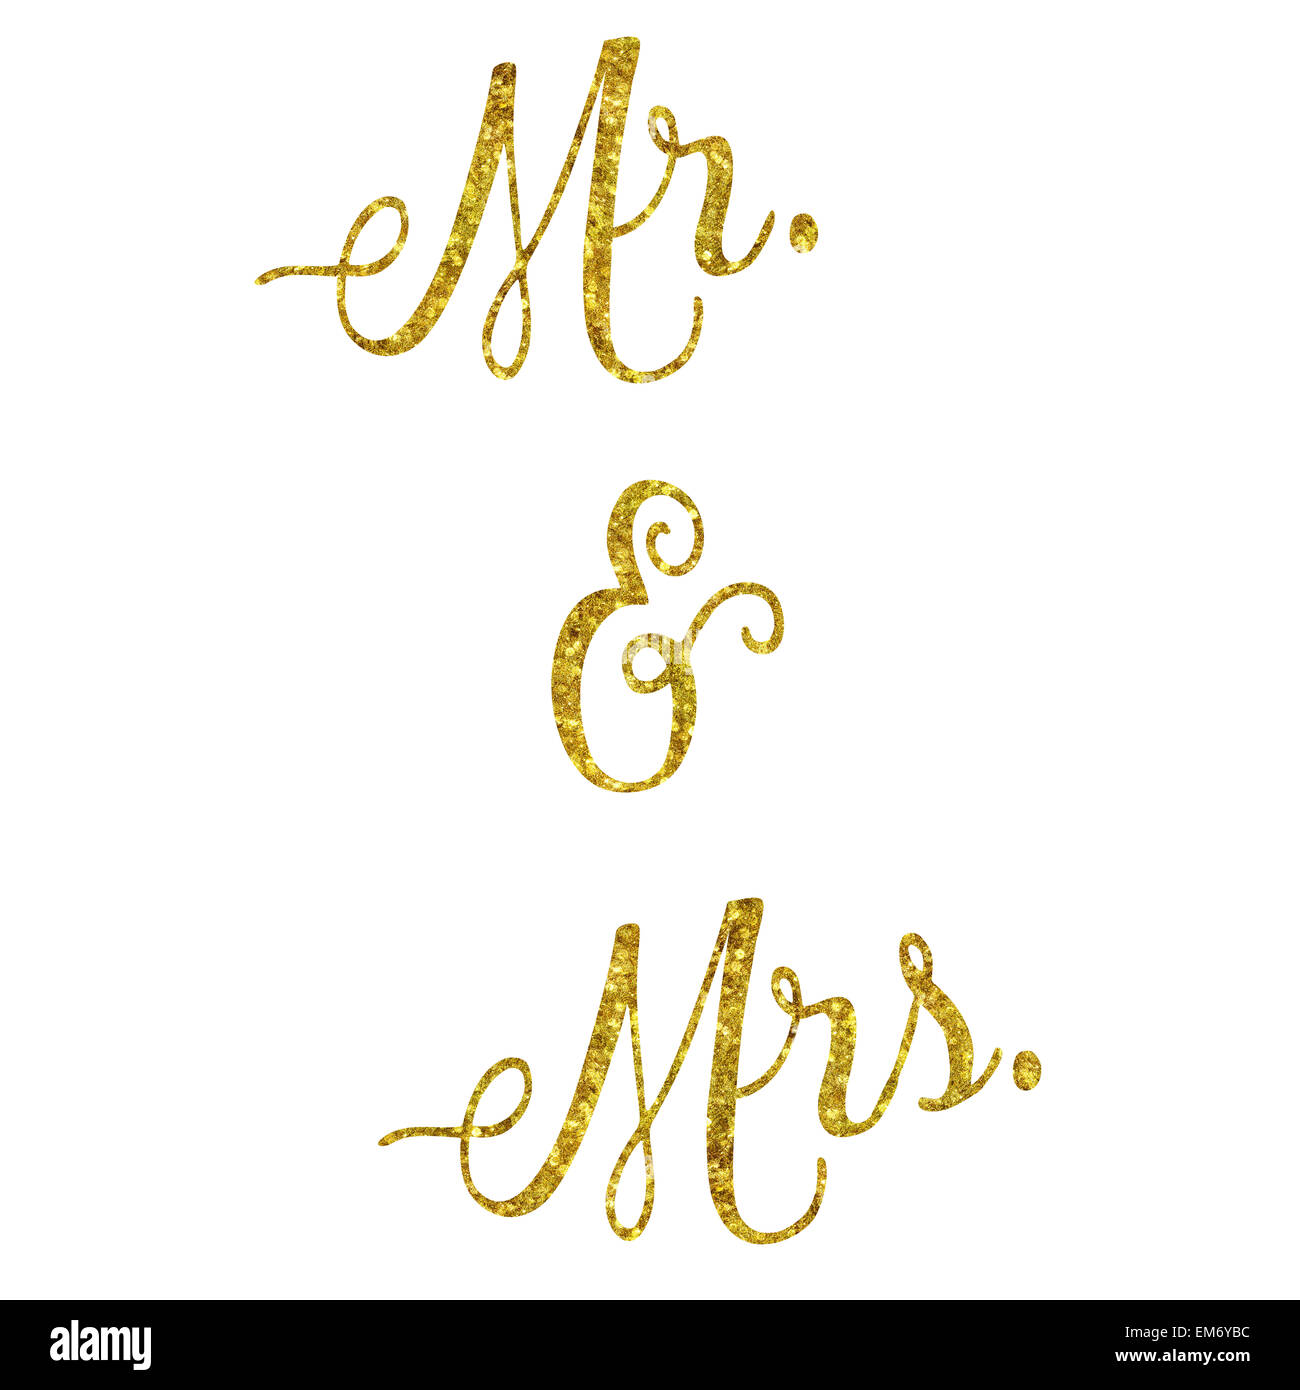 Il sig. e la Sig.ra Glittery oro in similpelle di lamina metallica preventivo di ispirazione isolata su sfondo bianco Foto Stock